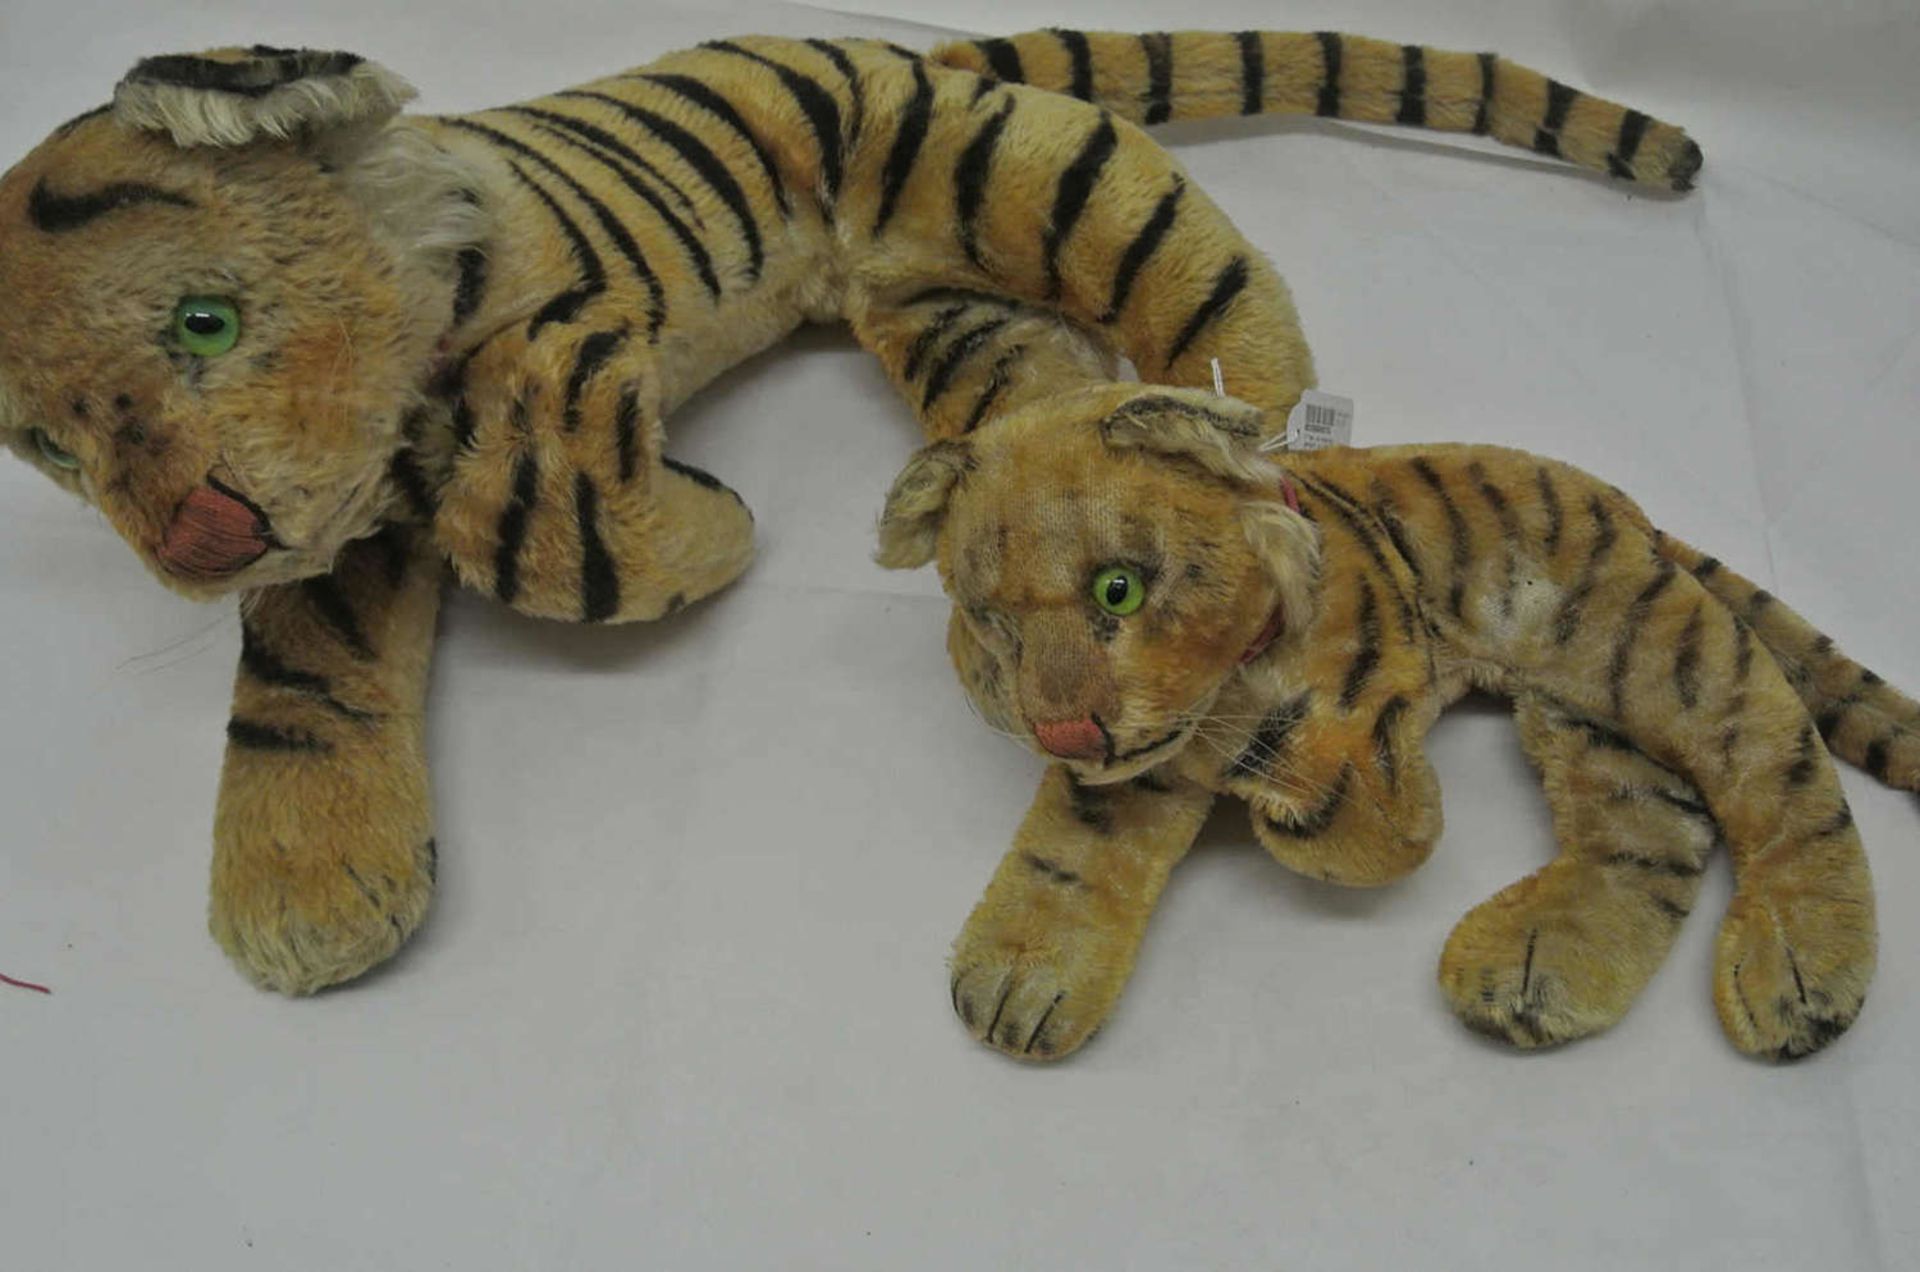 2 Tiger, mit Holzwolle gestopft, um 1930. Mit Glasaugen. Beim kleinen Tiger fehlt 1 Auge. Maße des